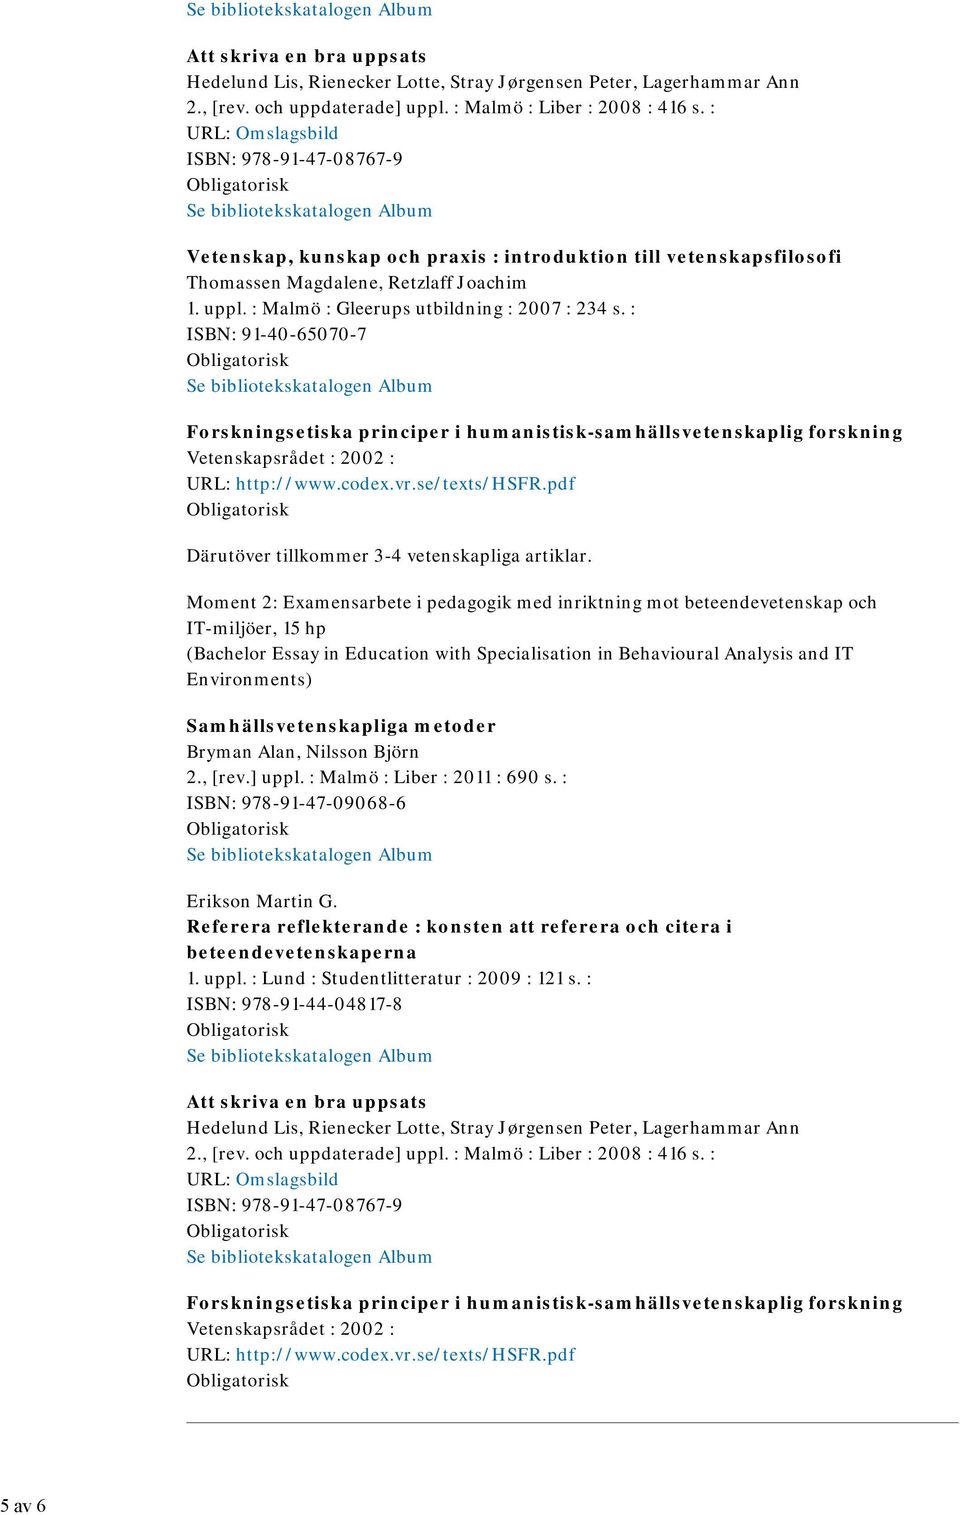 : Malmö : Gleerups utbildning : 2007 : 234 s. : ISBN: 91-40-65070-7 Forskningsetiska principer i humanistisk-samhällsvetenskaplig forskning Vetenskapsrådet : 2002 : URL: http://www.codex.vr.